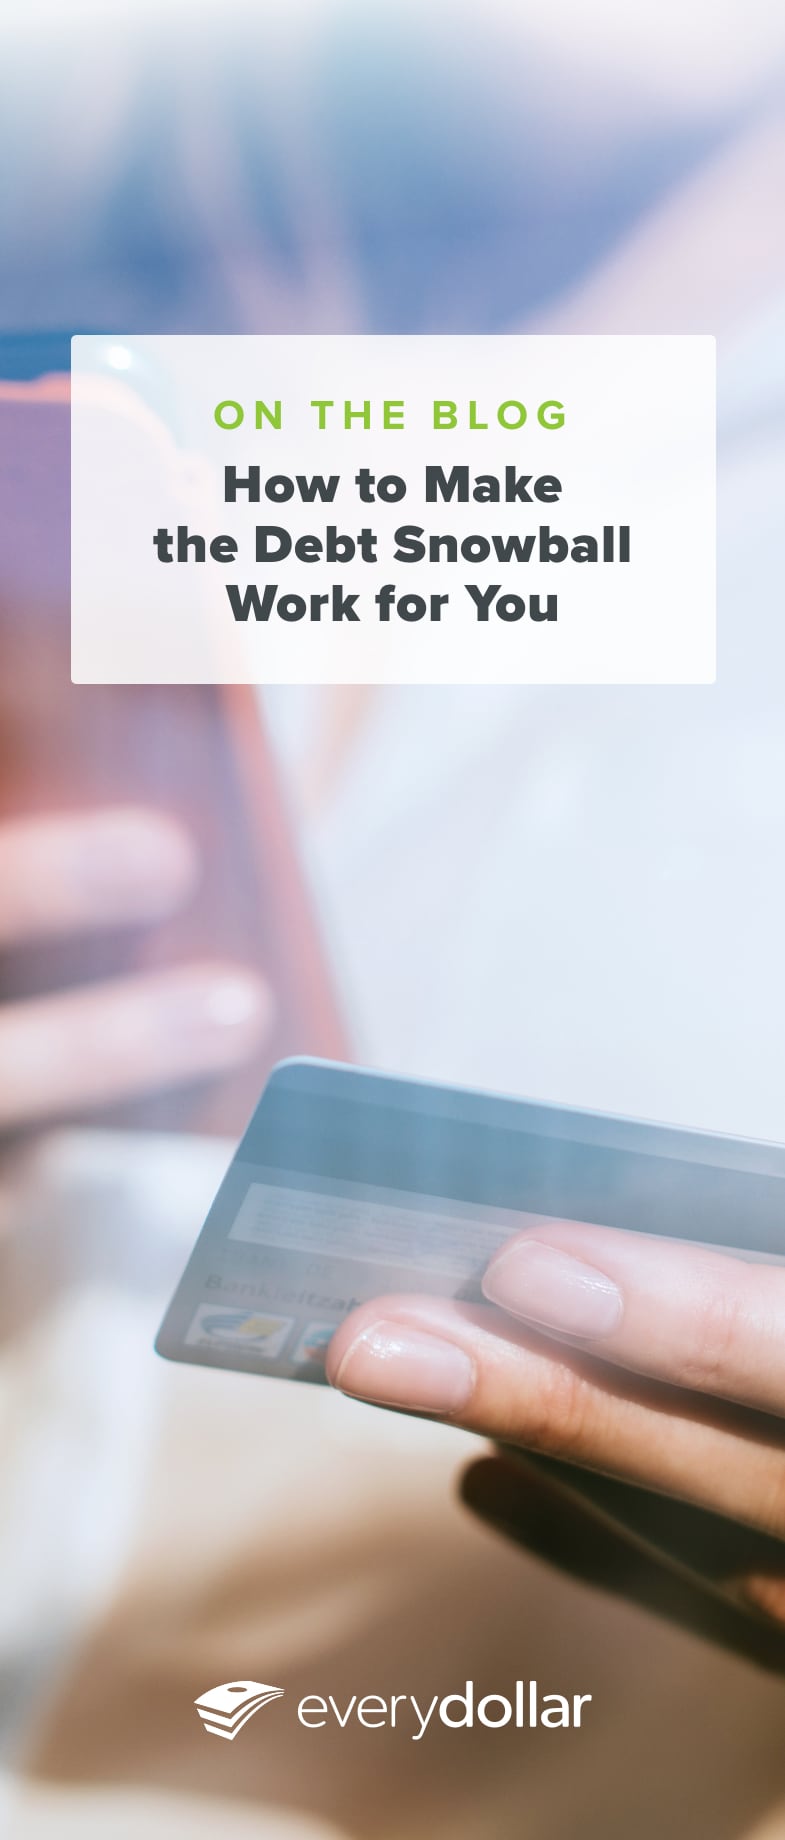 Debt snowball app for mac